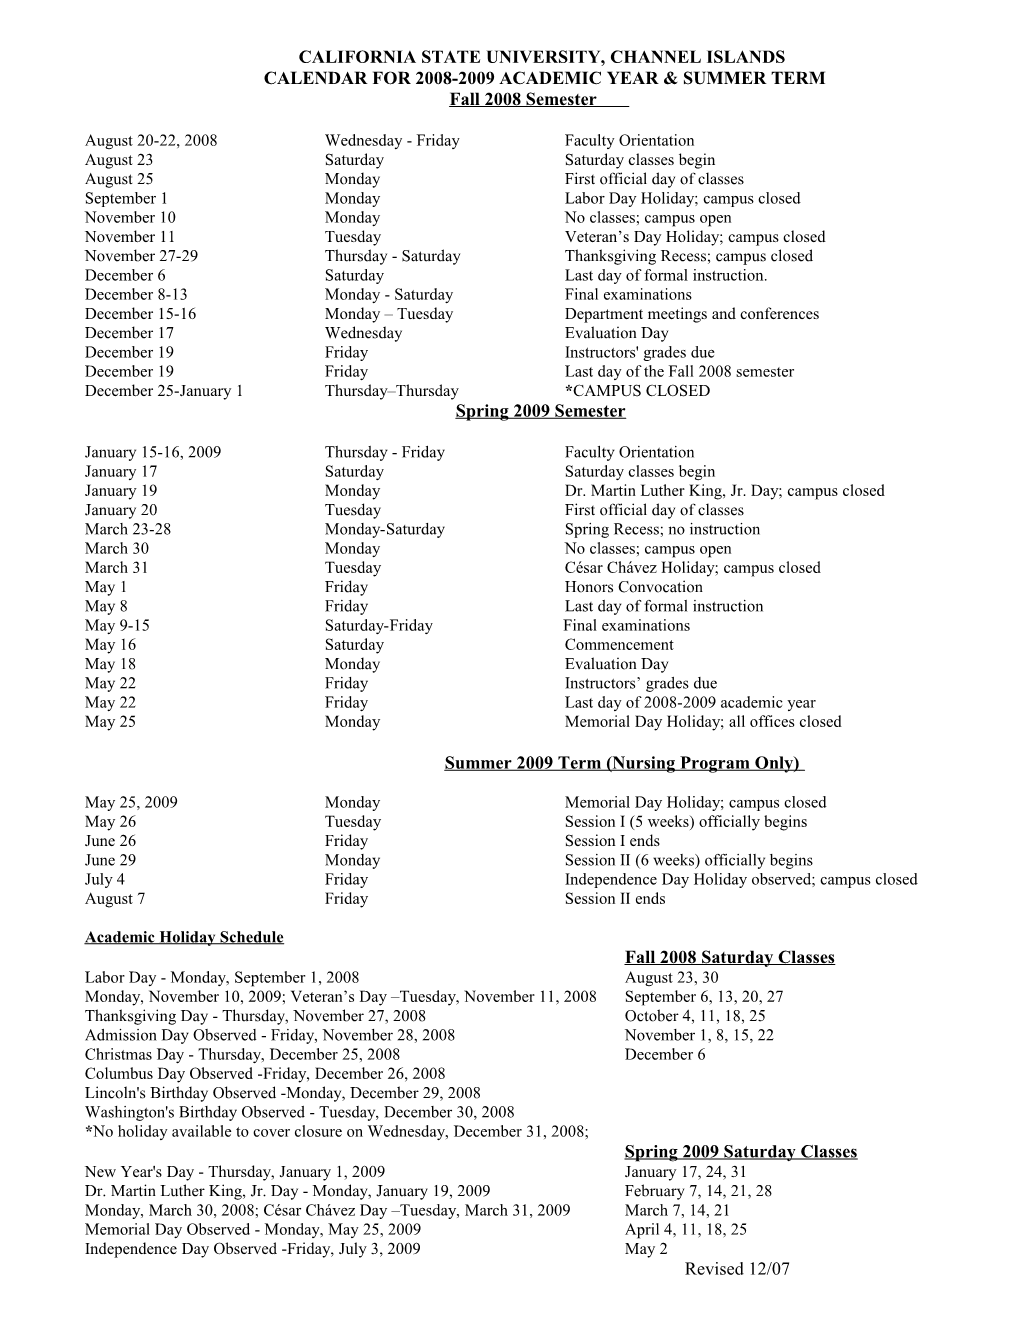 Calendar for 2008-2009 Academic Year & Summer Term